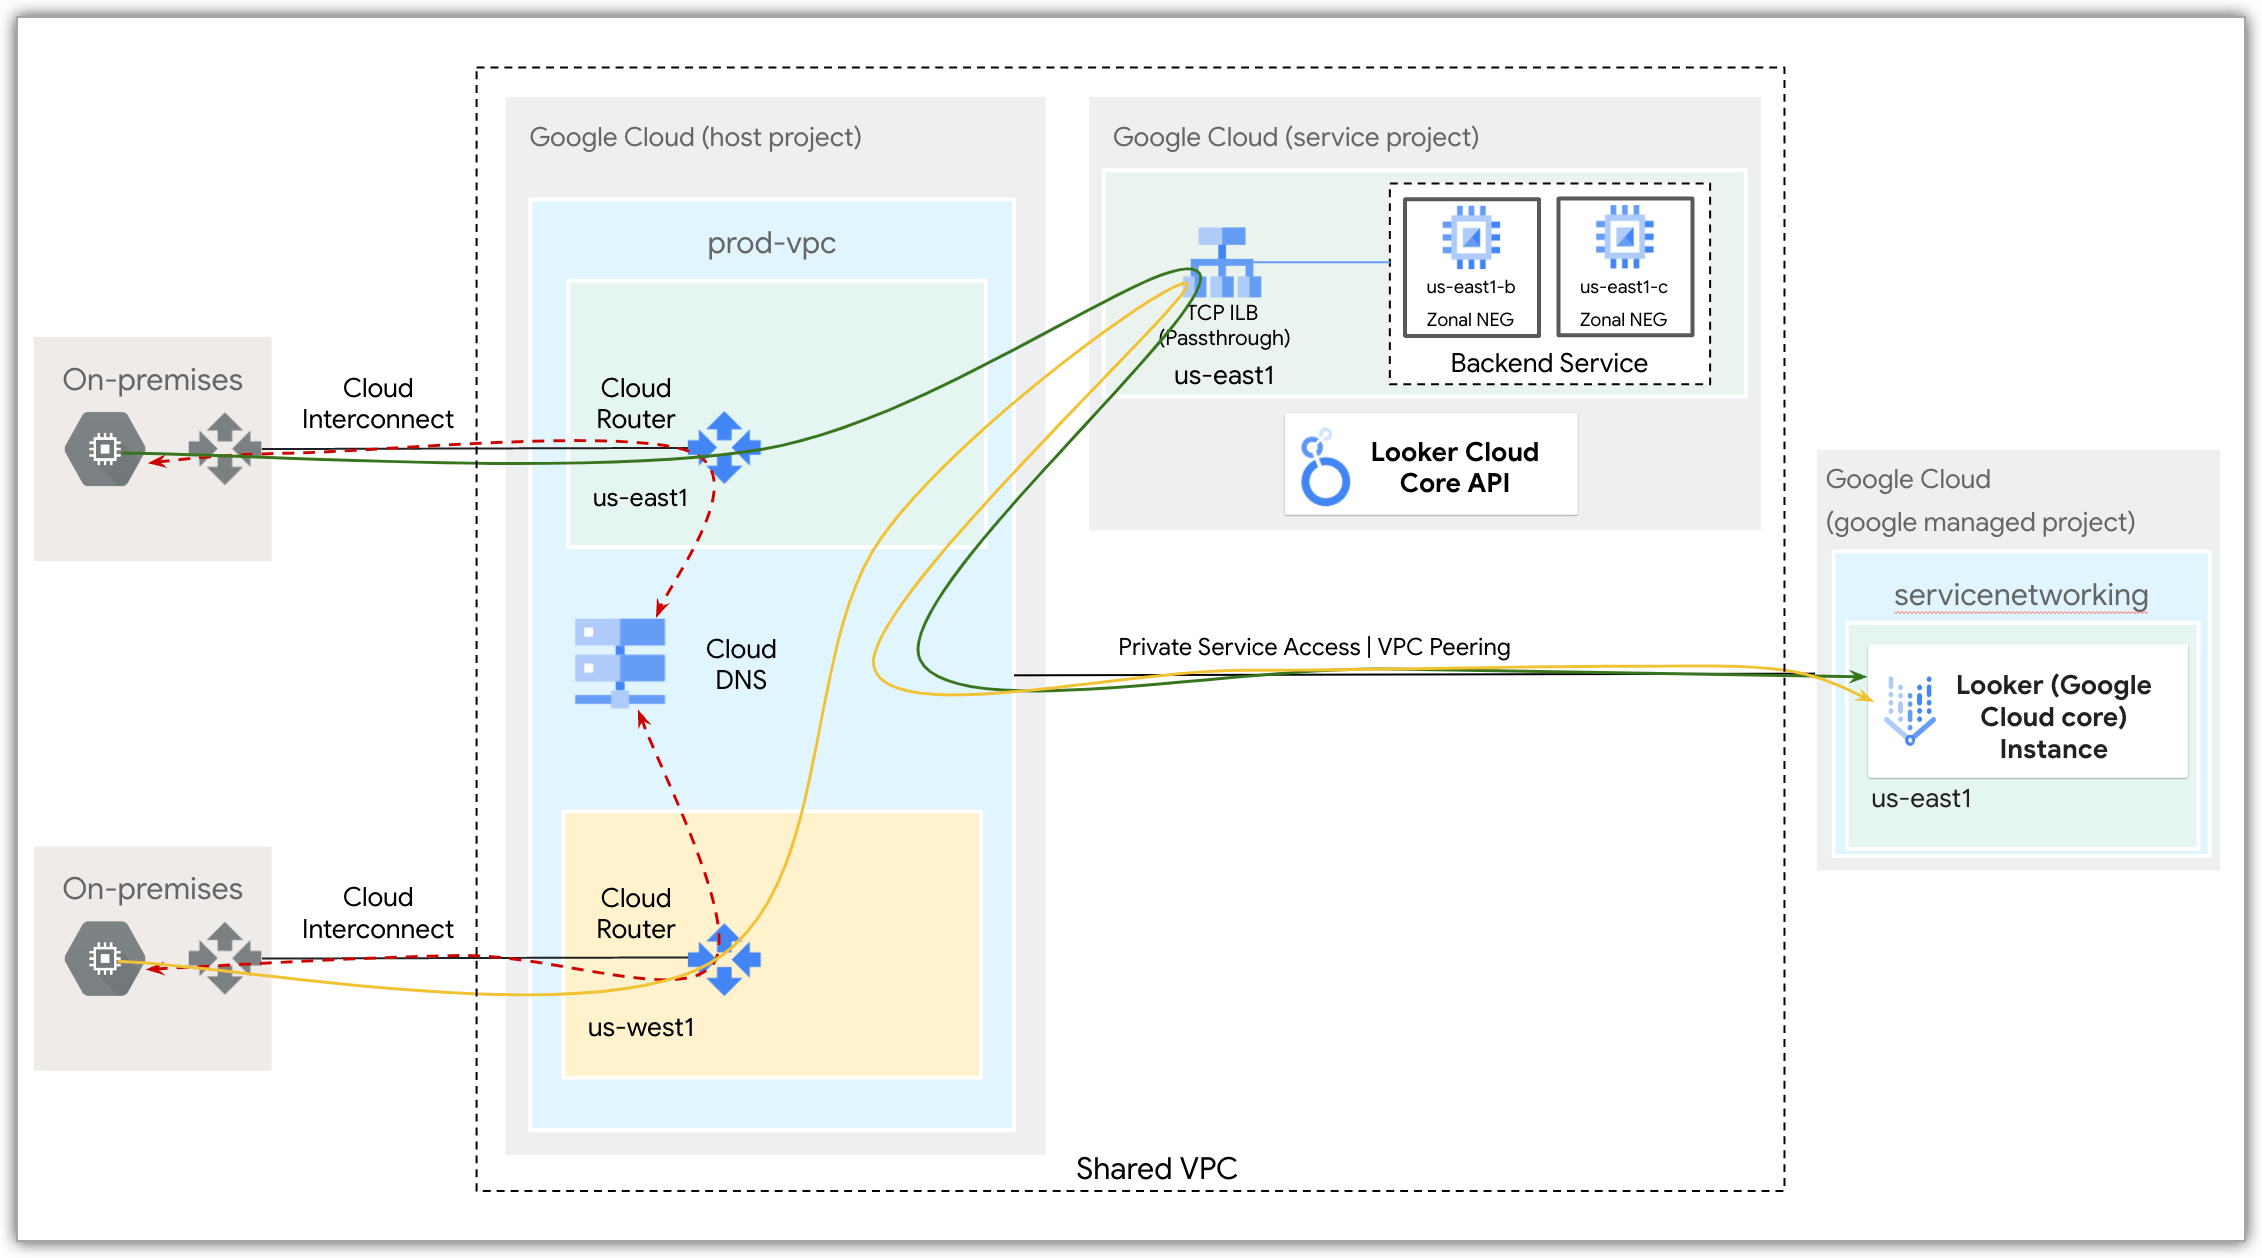 Cloud Router, 내부 부하 분산기, 비공개 서비스 액세스를 사용한 Looker(Google Cloud 핵심 서비스) 인스턴스에 대한 보안 액세스를 보여주는 Google Cloud 네트워크